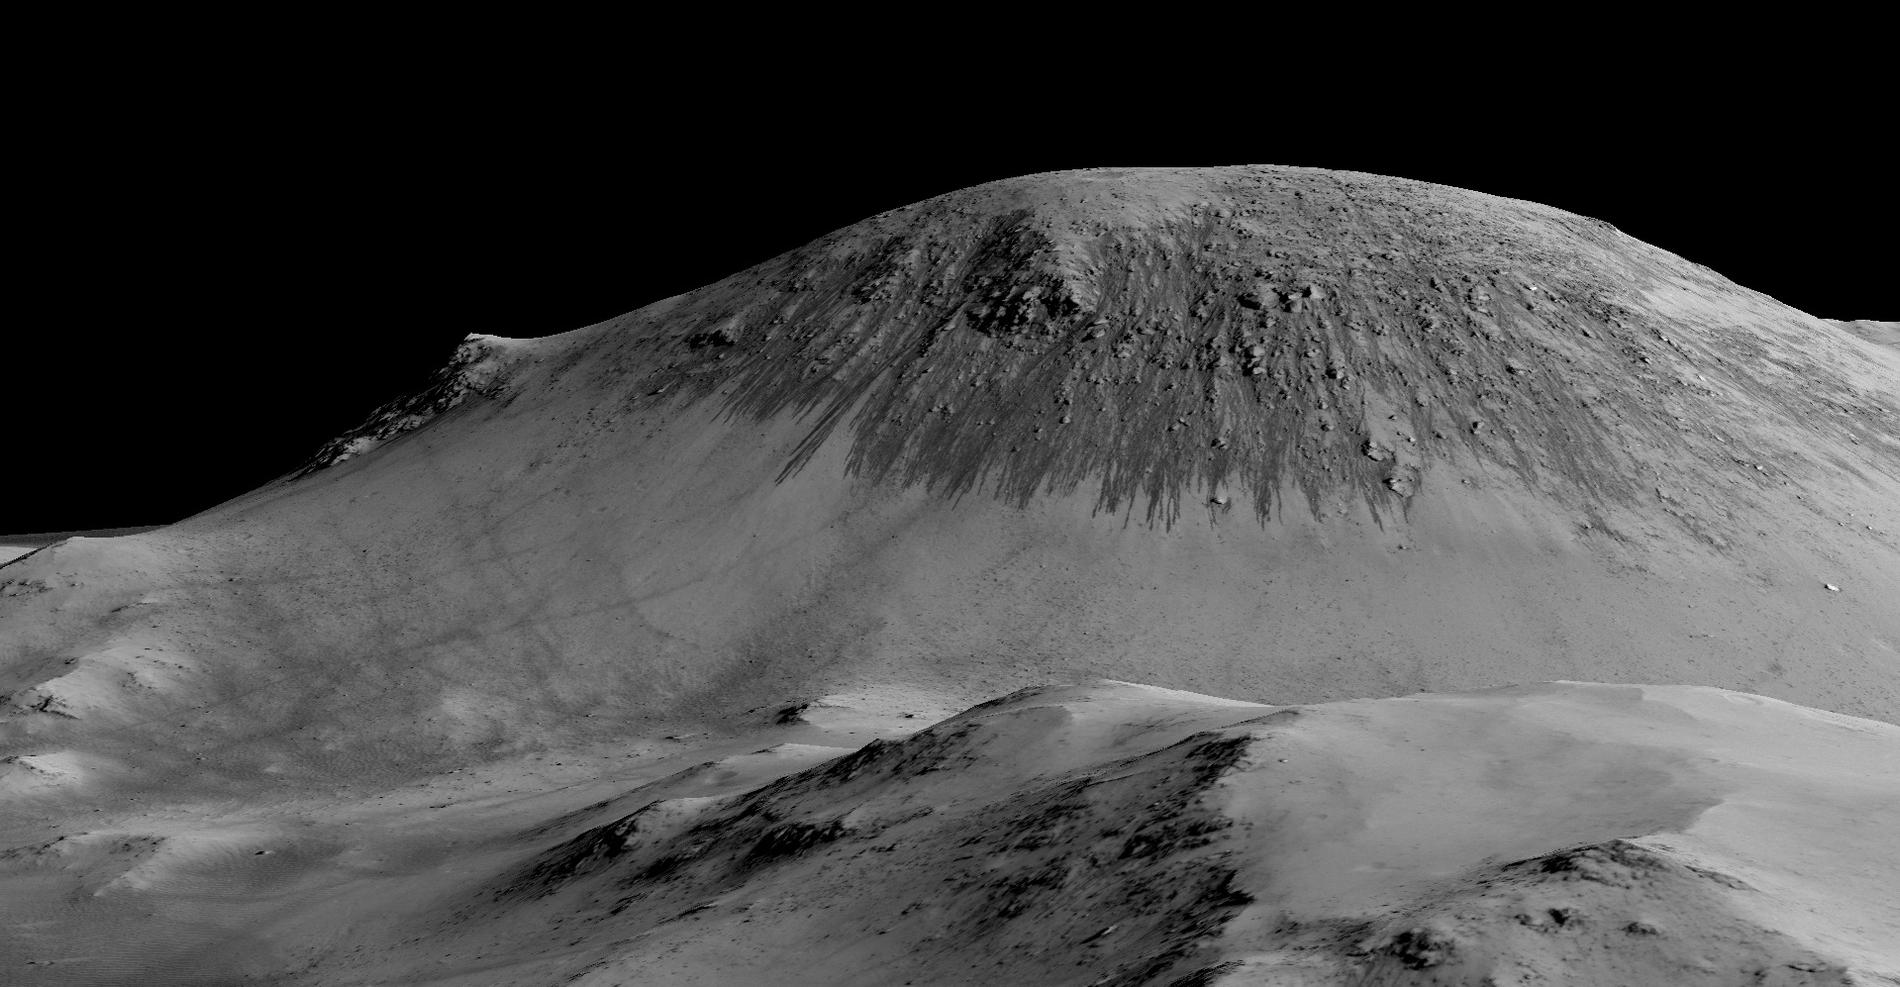 Vatten tros ha runnit nerför den här sluttningen på Mars. De mörka stråken är saltlösningar som bildats av vattnet.